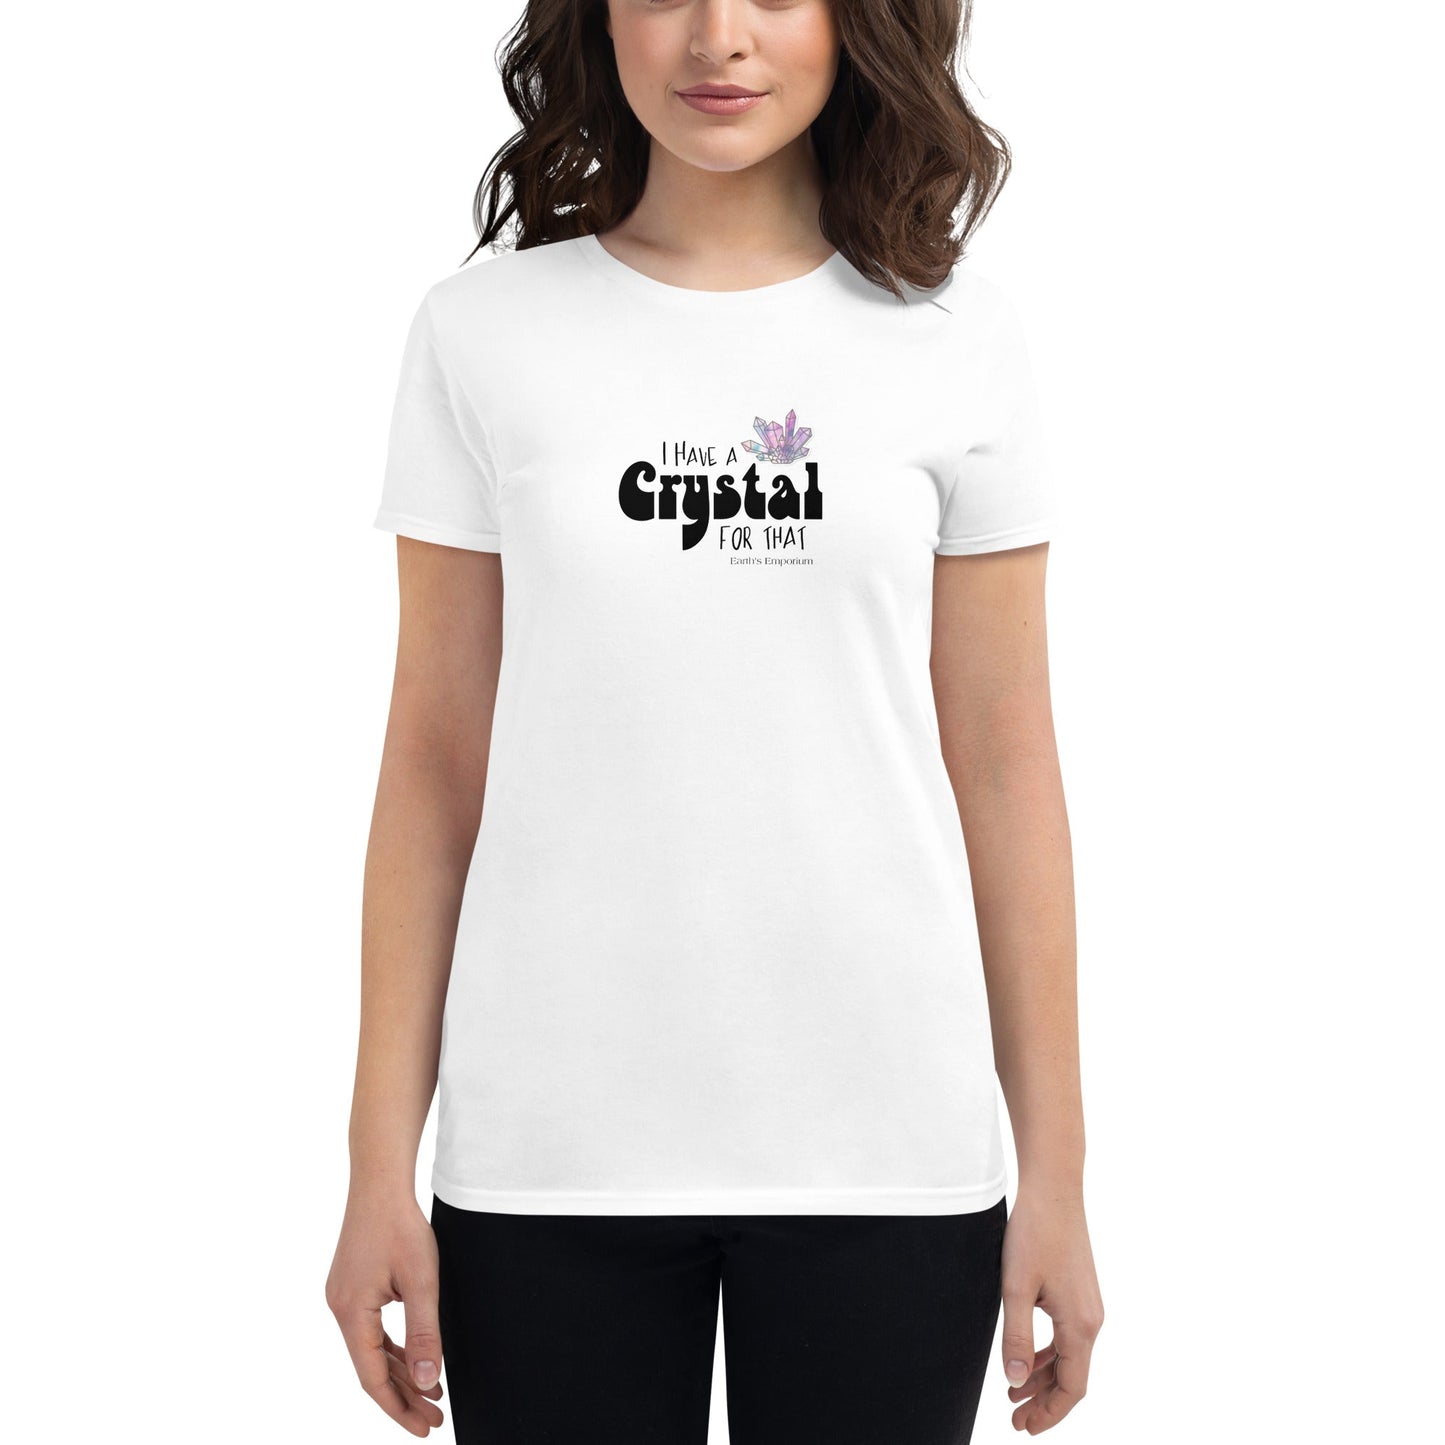 Women's short sleeve t-shirt - Earth's Emporium